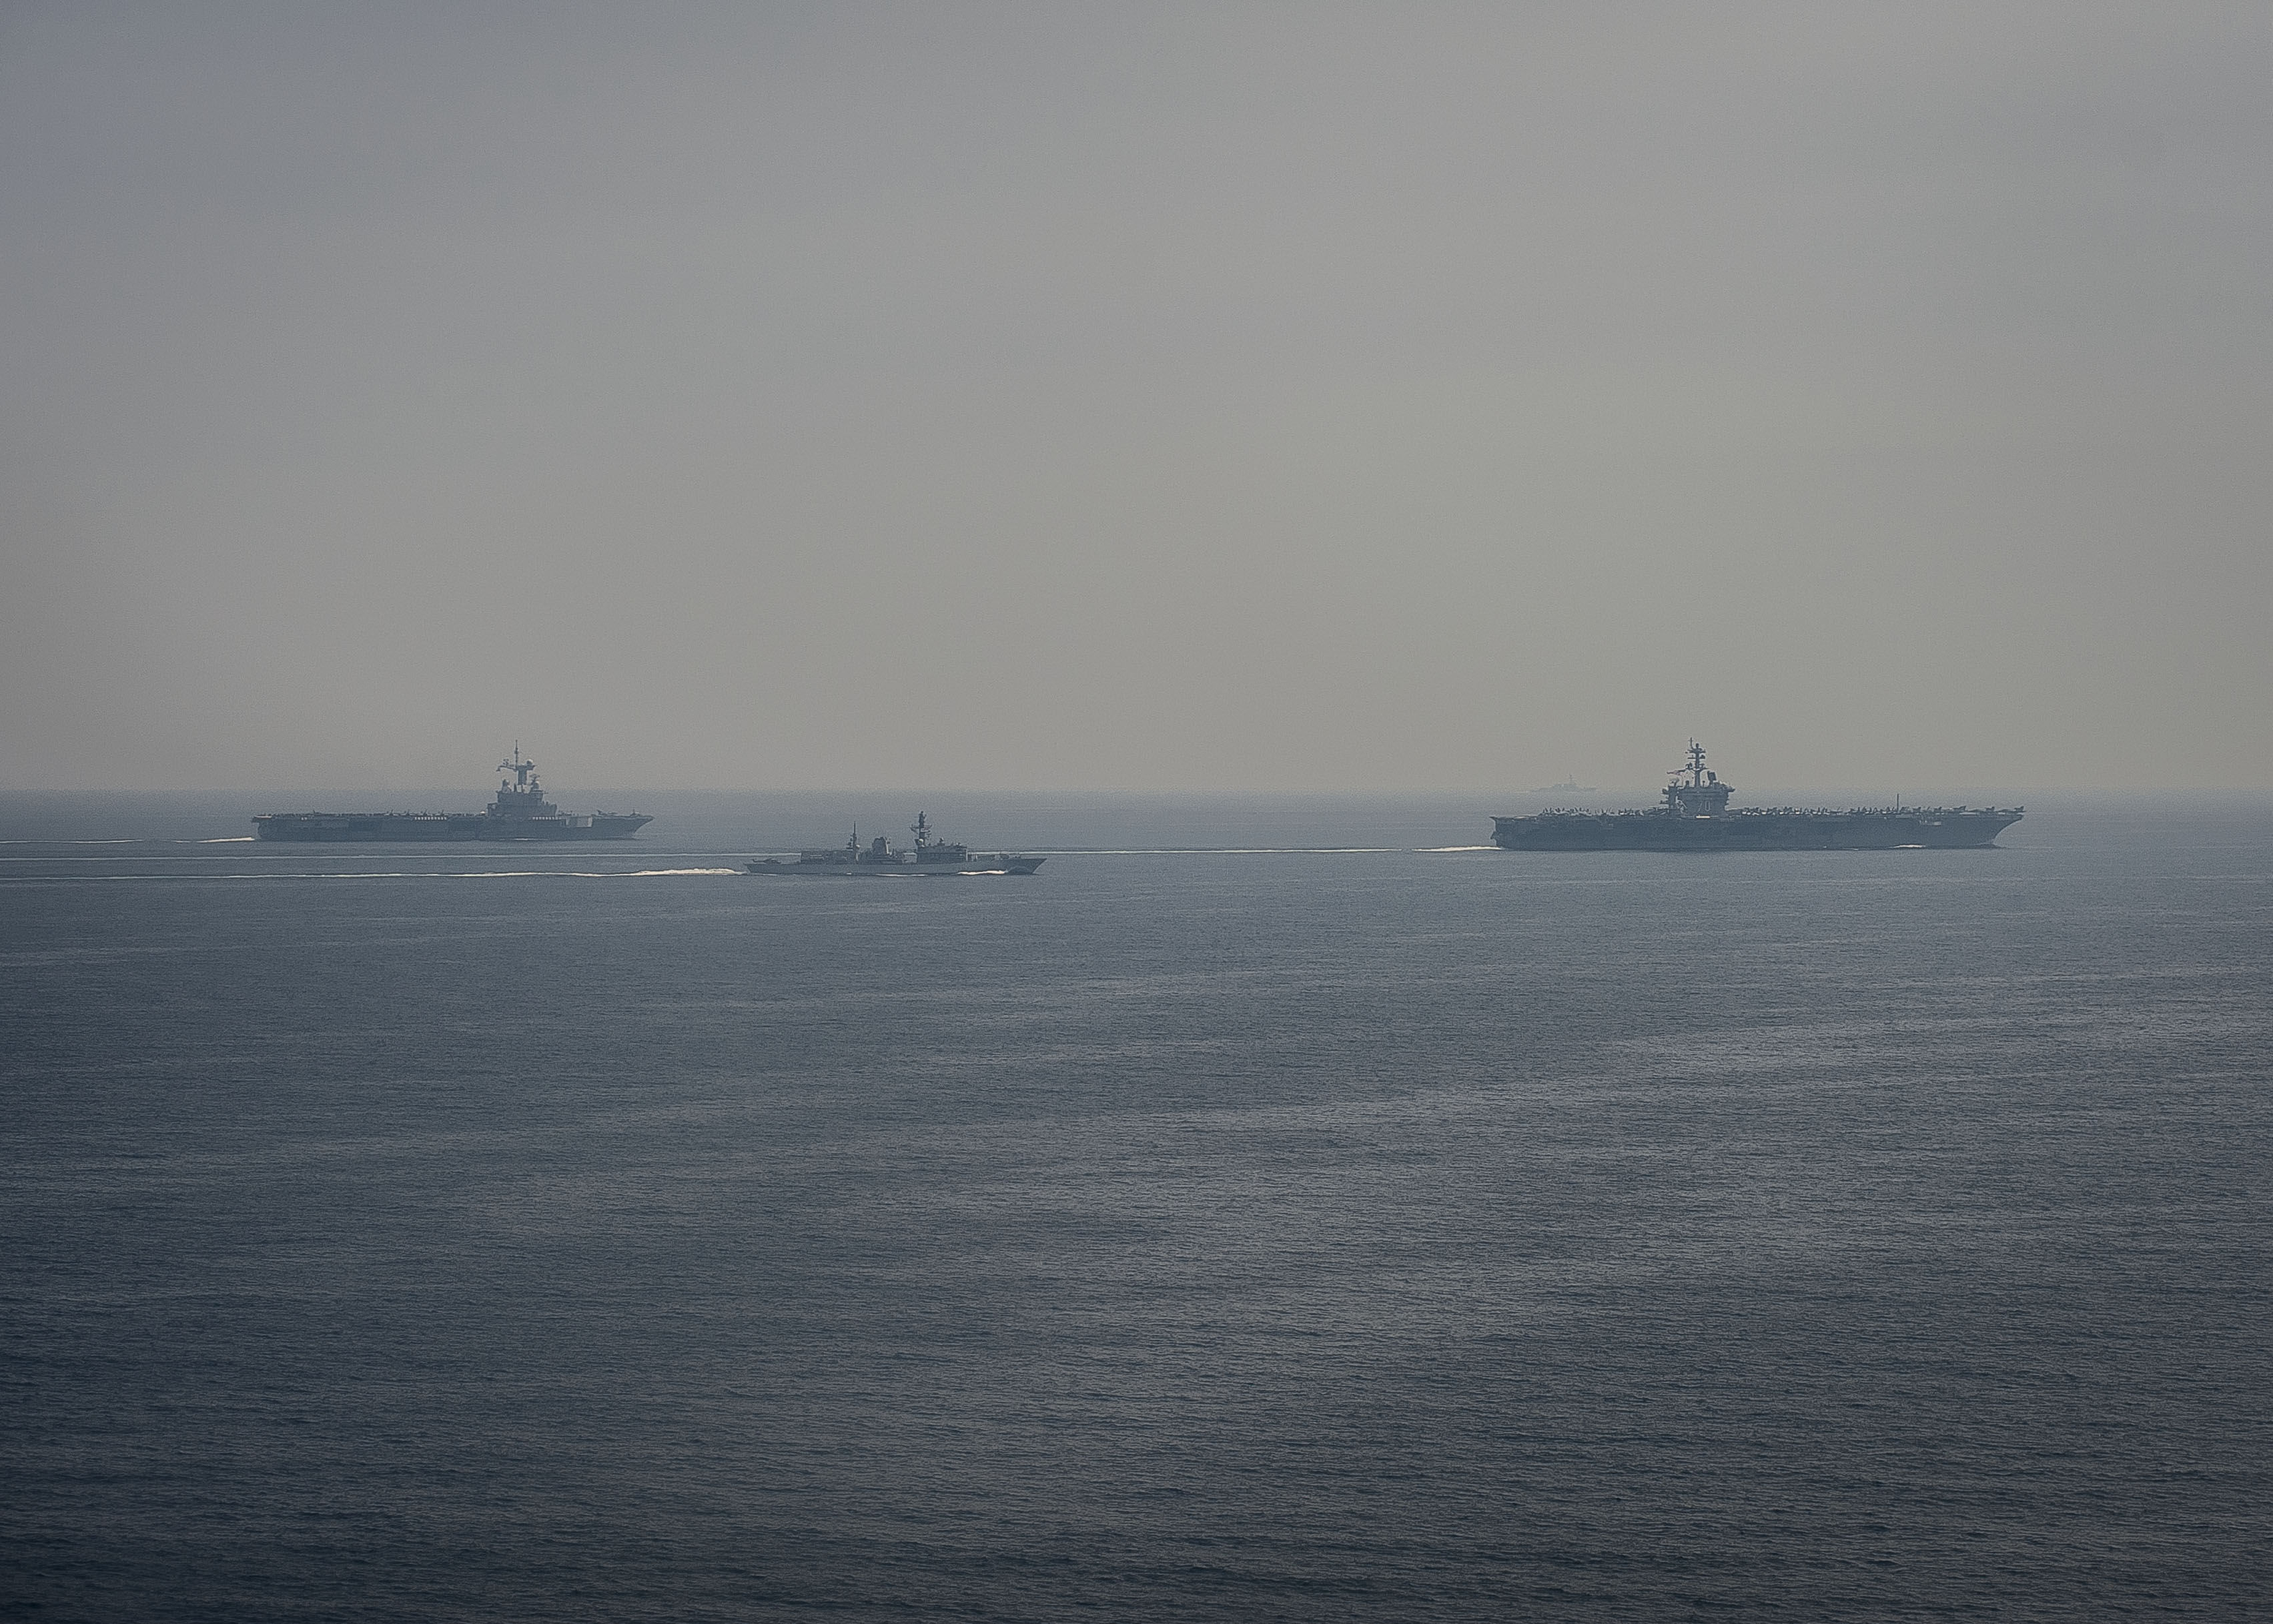 Le porte-avions Charles de Gaulle (à gauche), la frégate britannique HMS Kent (au centre), et le porte-avions américain USS Carl Vinson (à droite) naviguent en formation dans le golfe Persique